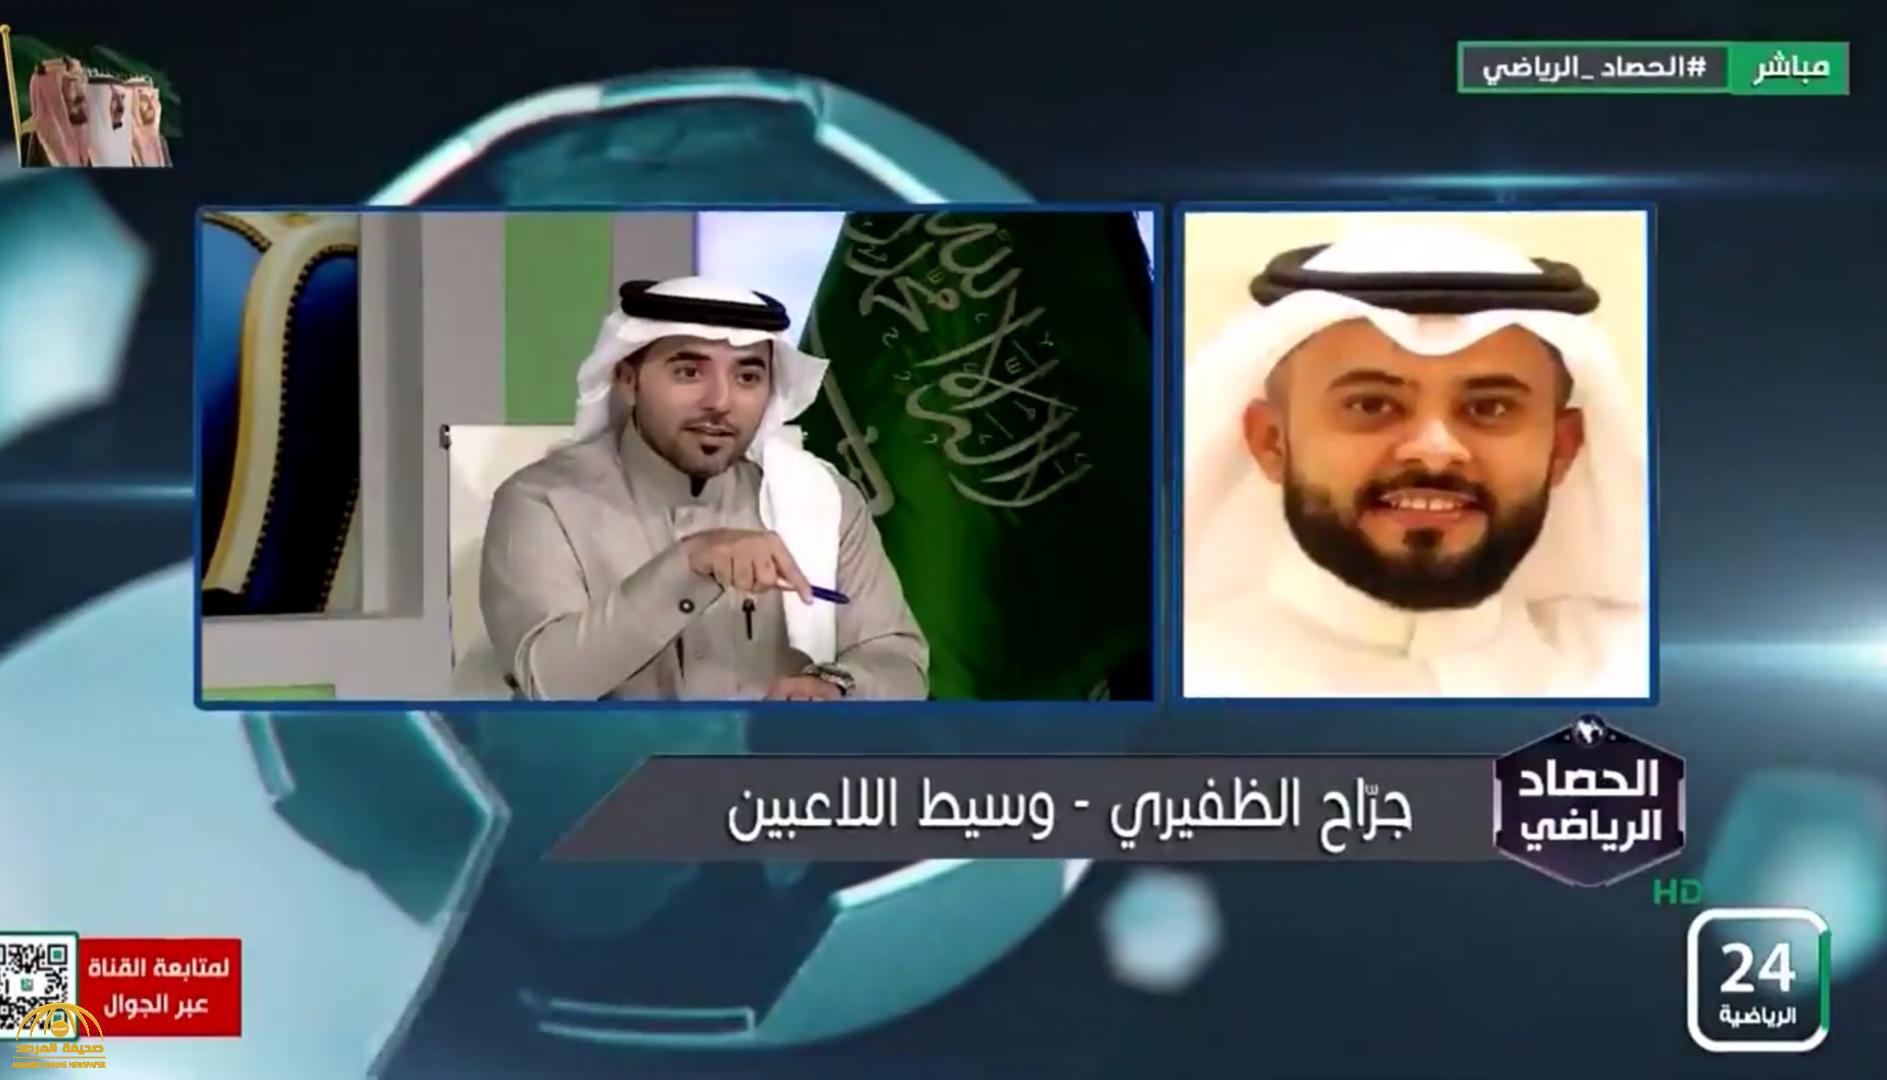 بالفيديو.. وكيل لاعبين يثير الجدل بشأن صفقة كبرى في الدوري السعودي خلال فترة الانتقالات الشتوية